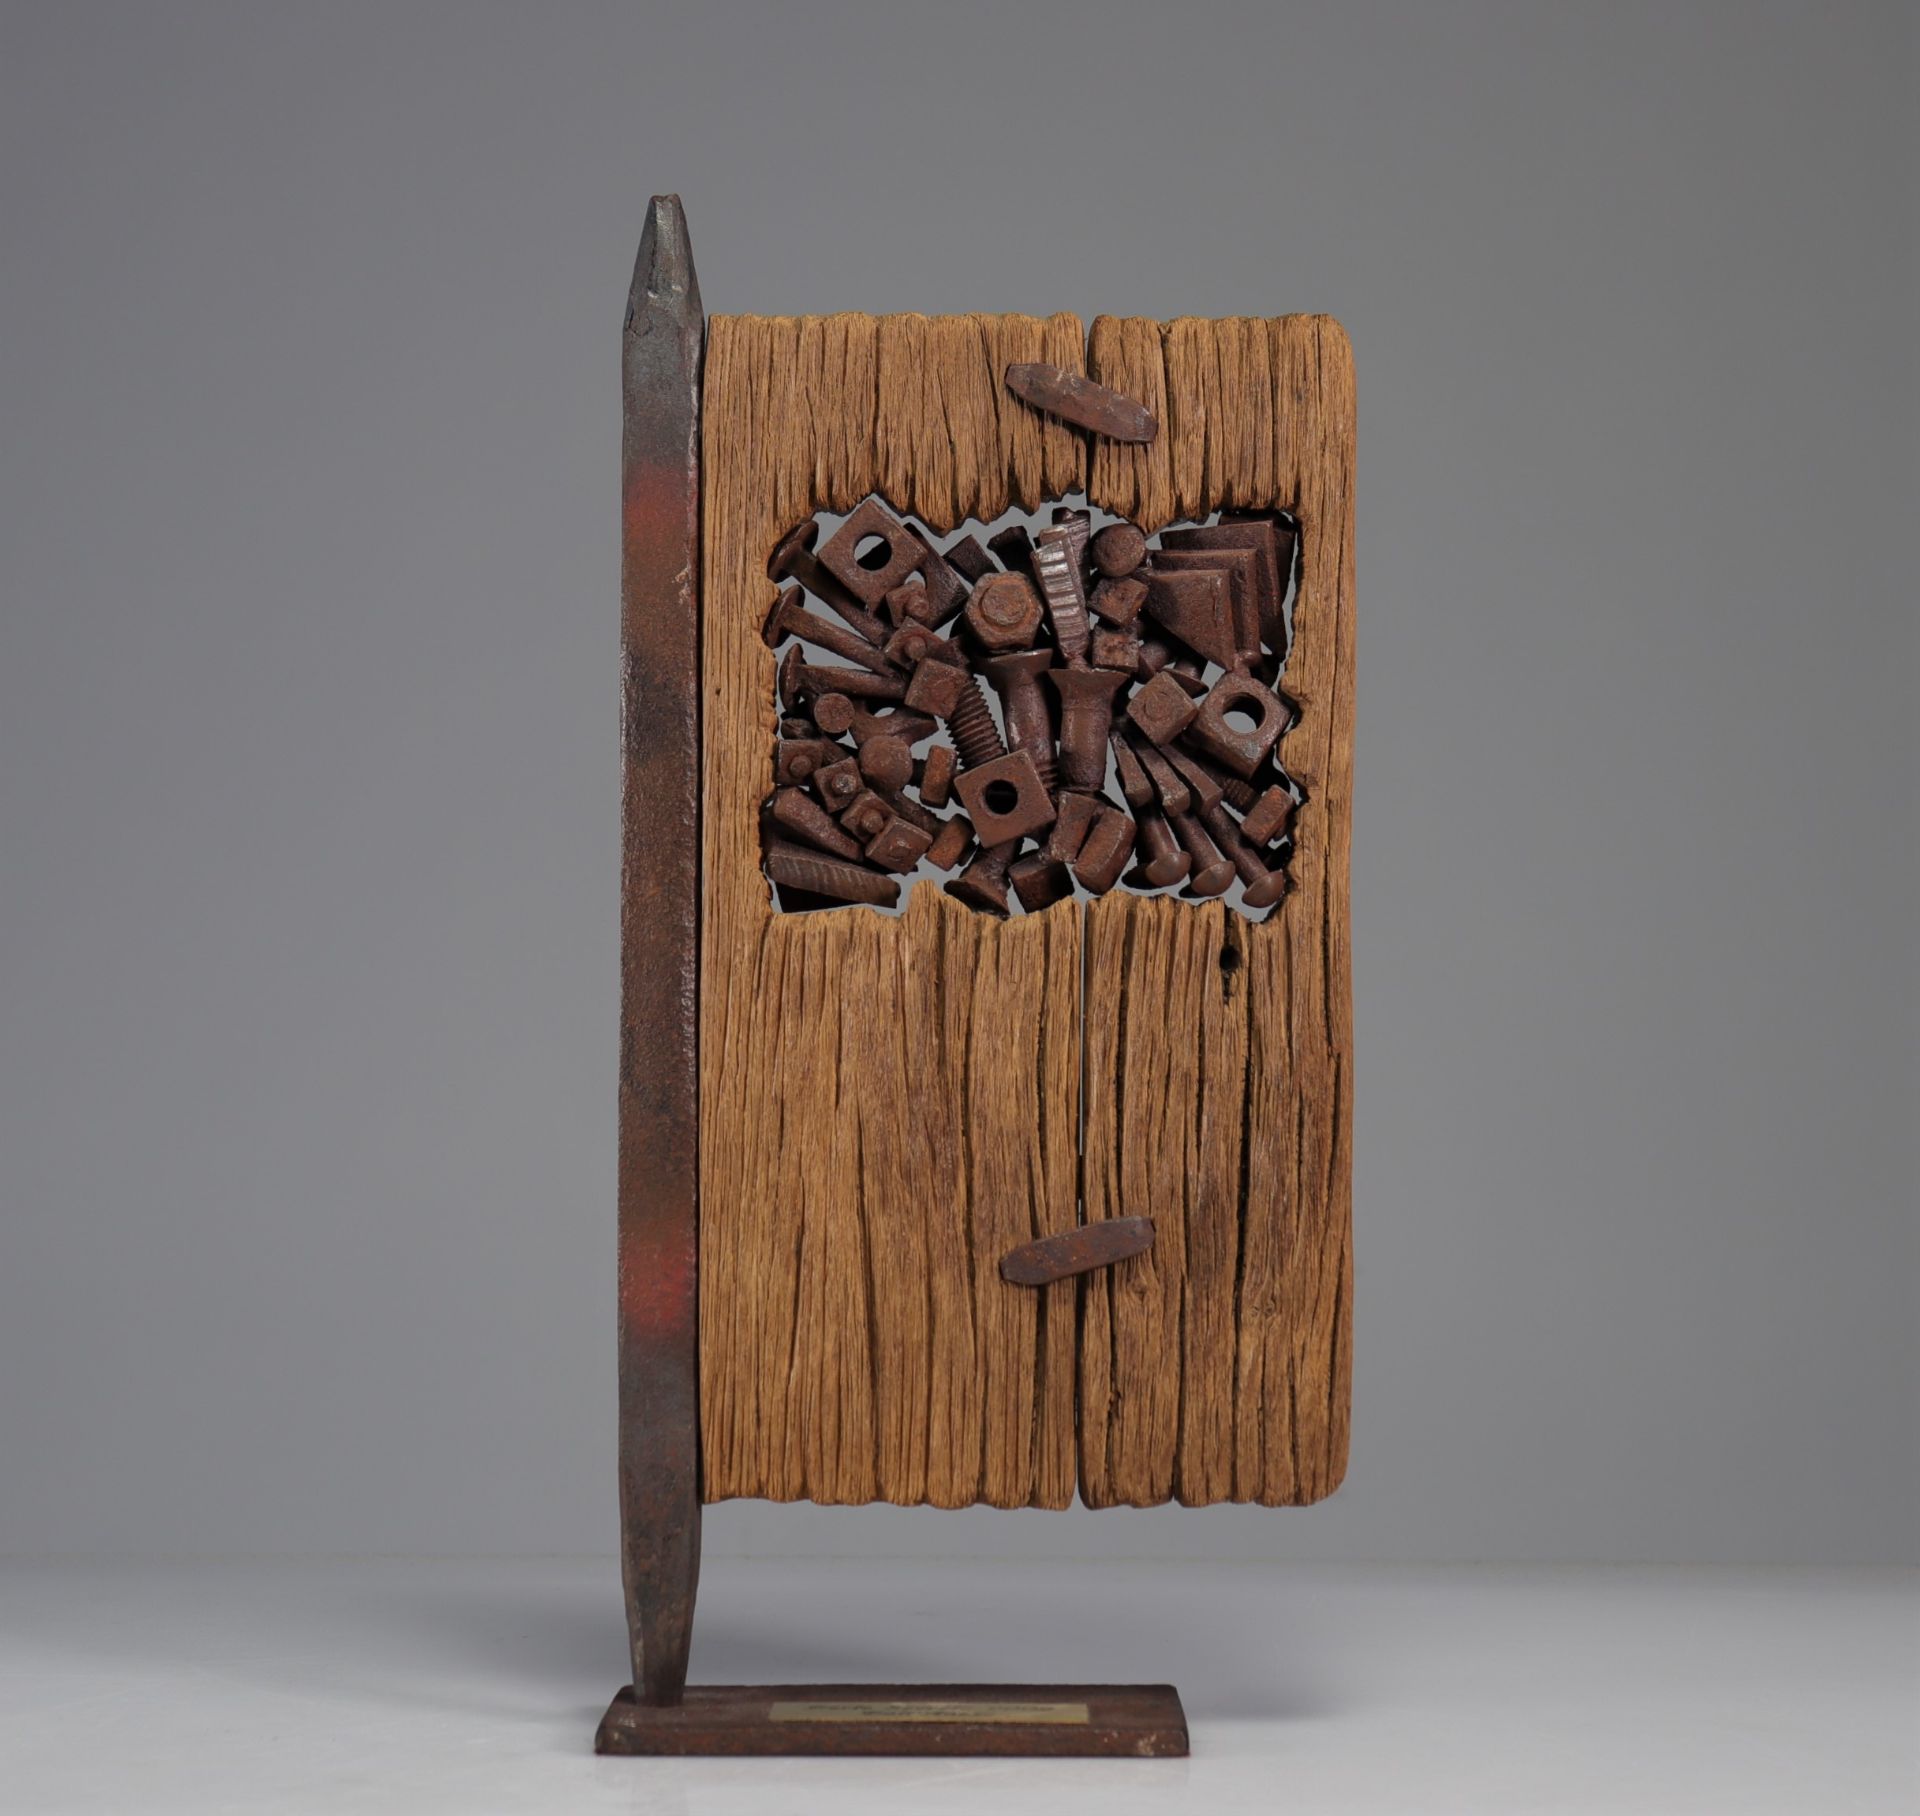 Jean-Pierre DALL'ANESE (1943) sculpture "Secret Door"